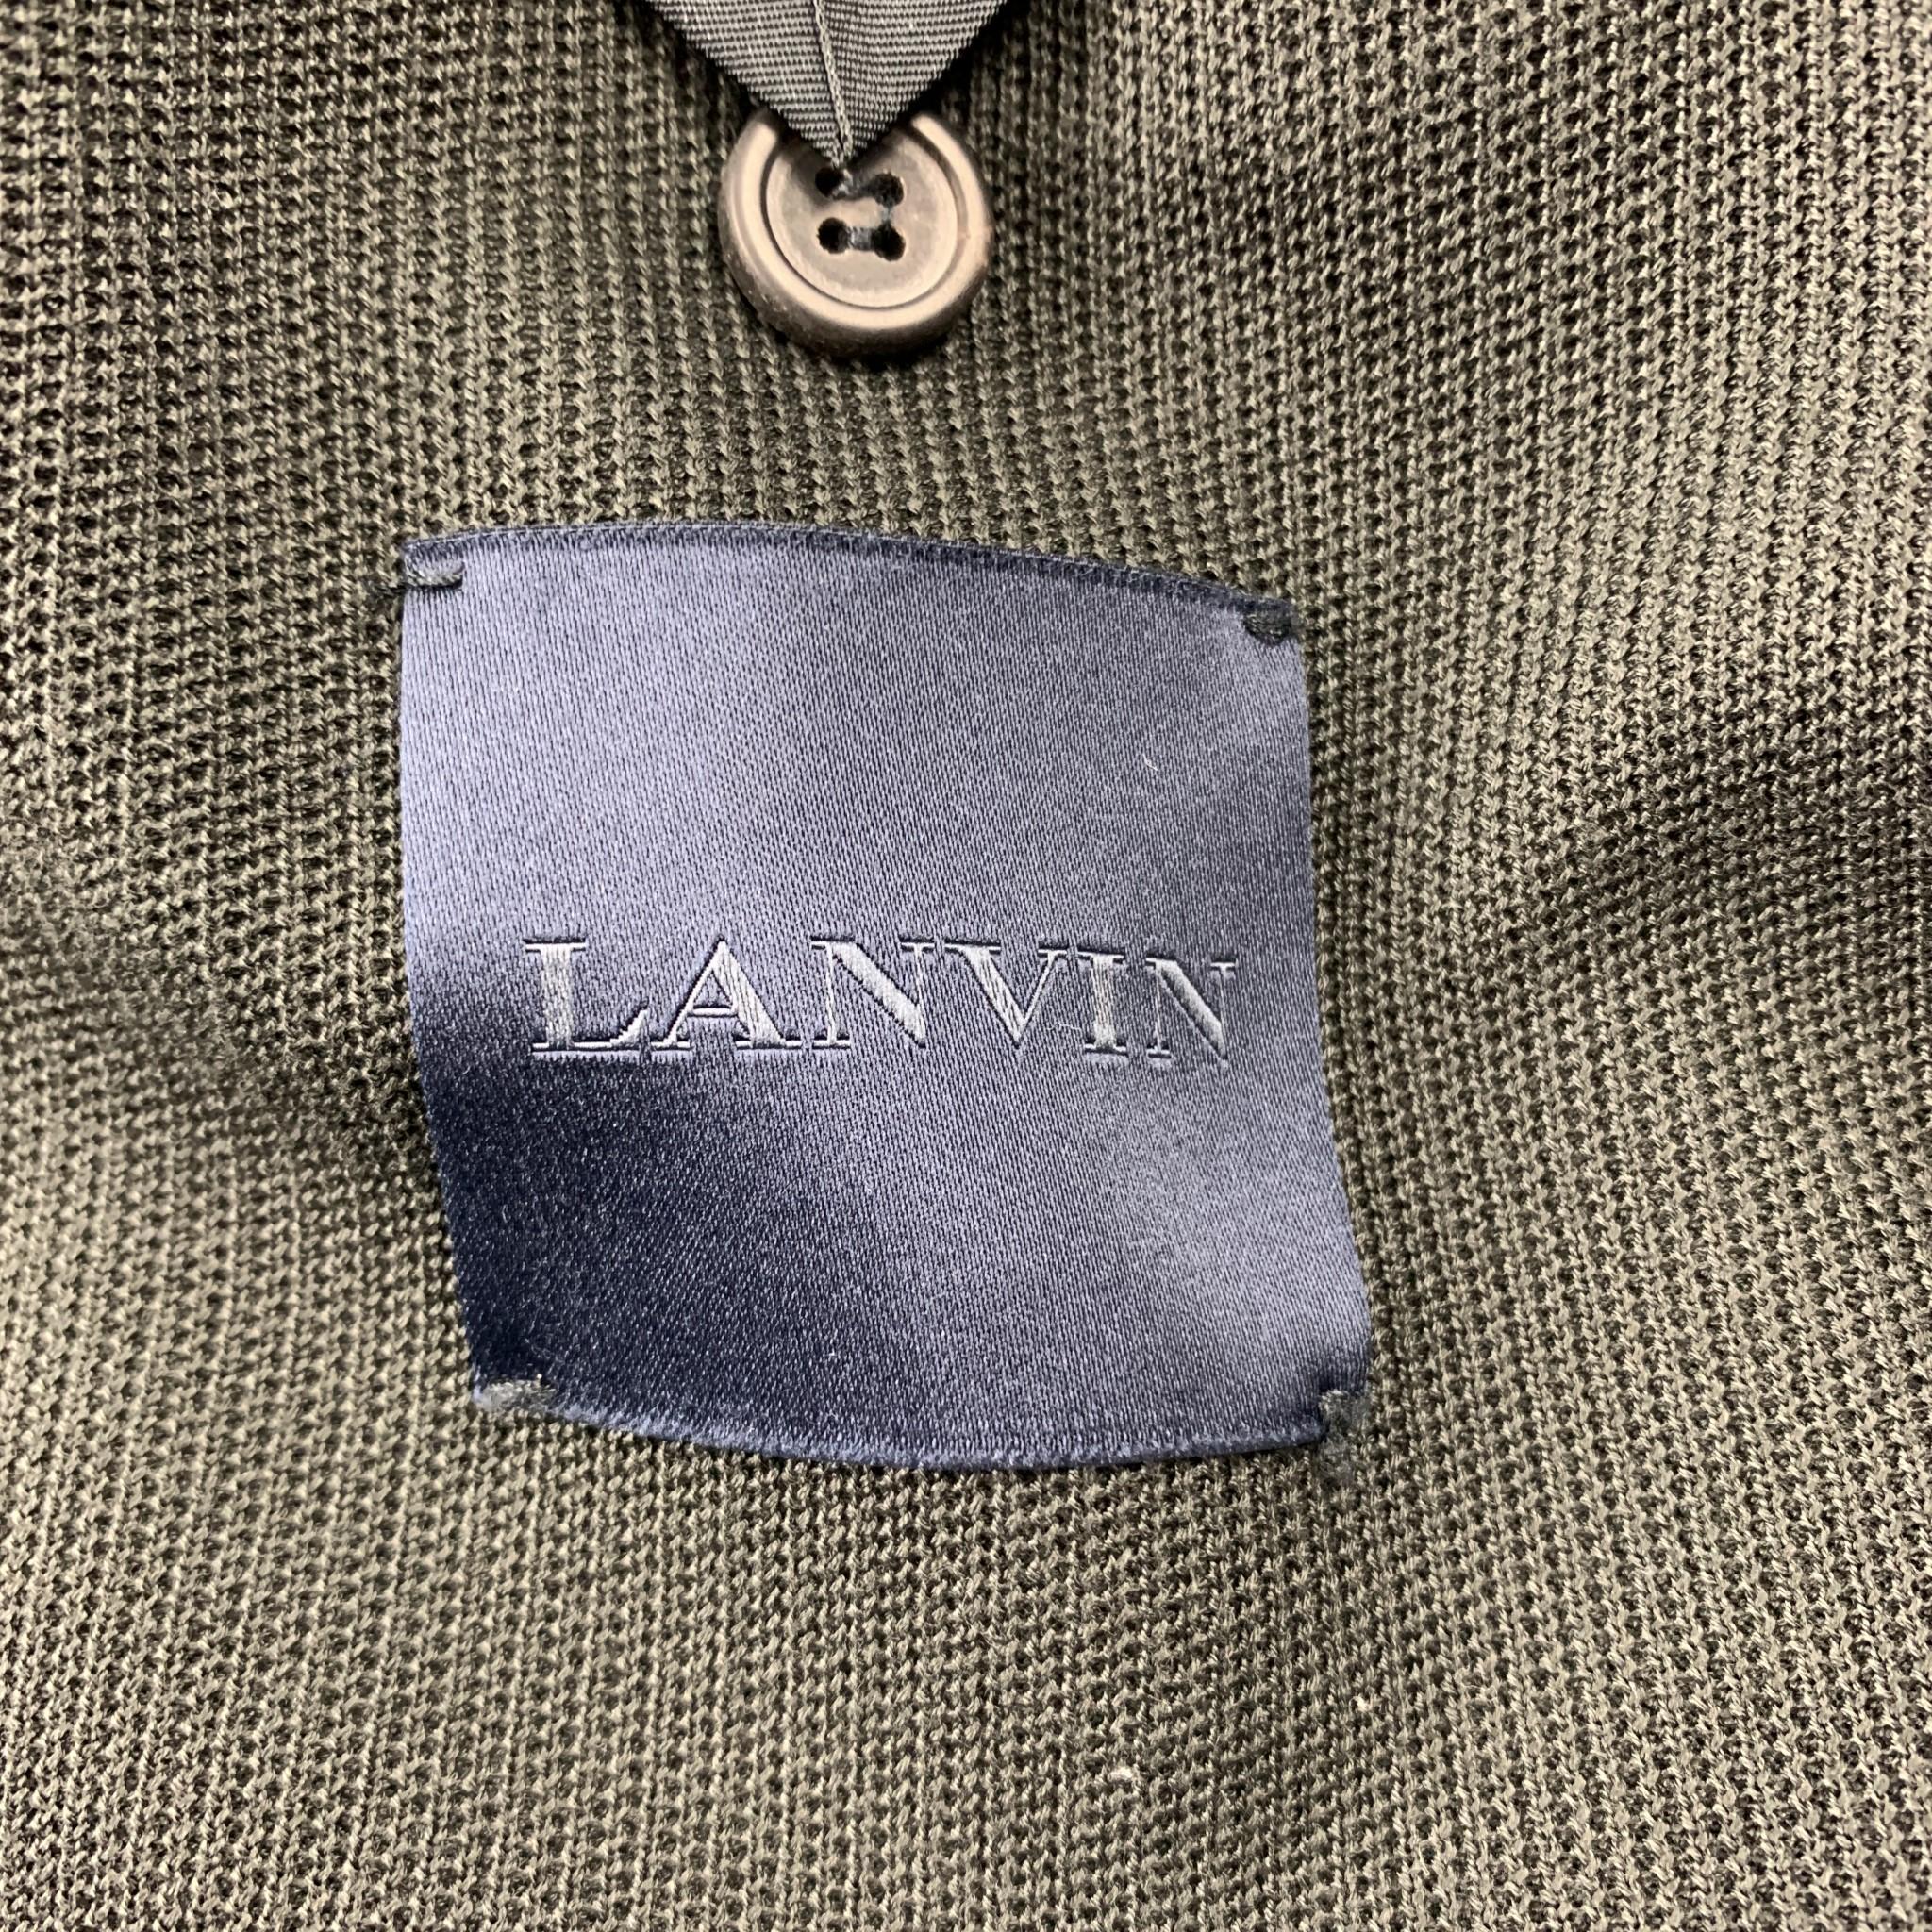 LANVIN Size 38 Charcoal Woven Cotton Notch Lapel Sport Coat Jacket 1